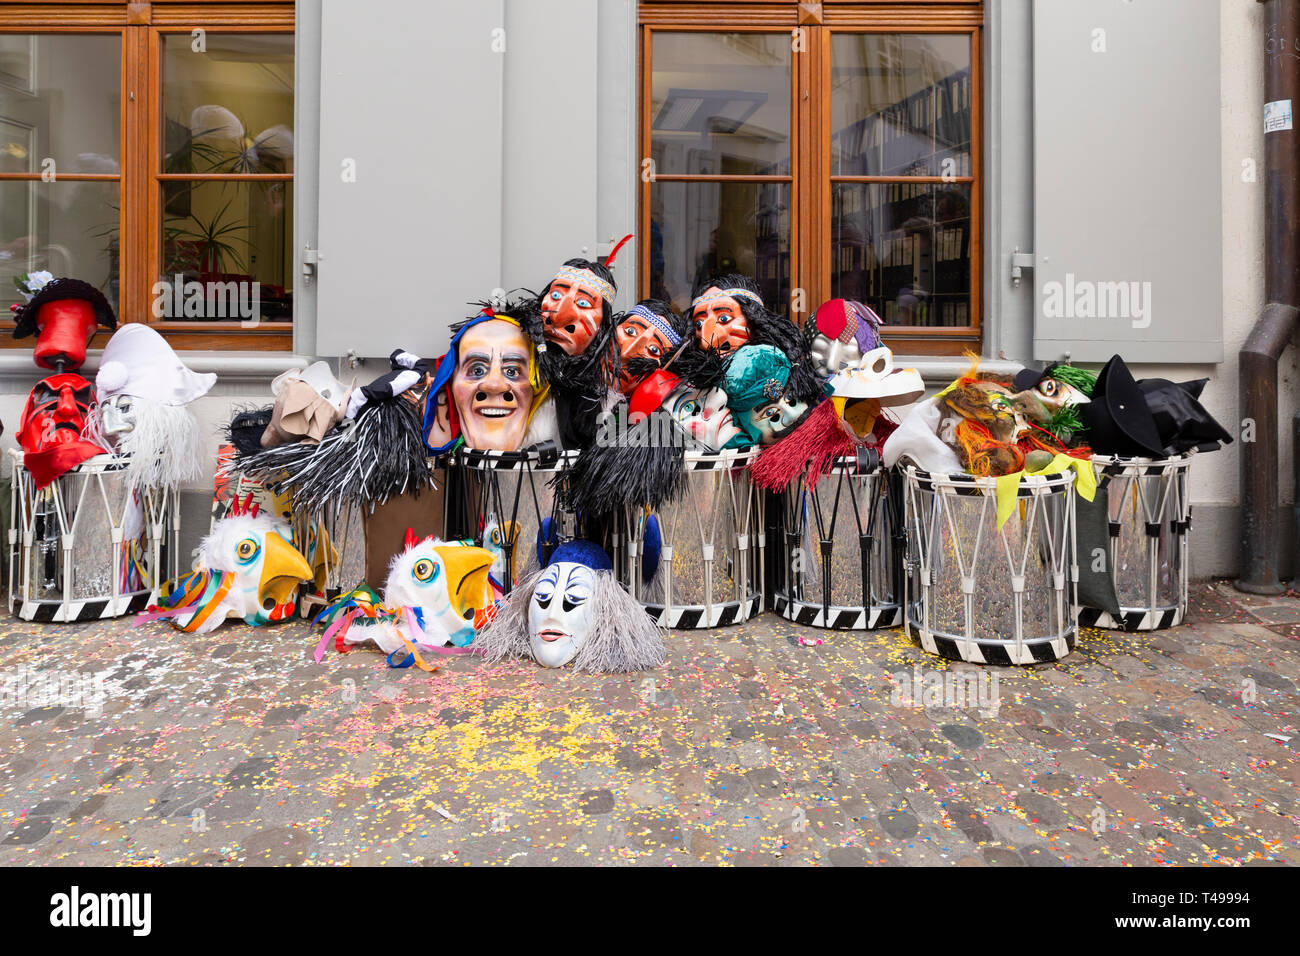 Augustinergasse, Bâle, Suisse - Mars 12th, 2019. Les masques de carnaval et les caisses claires entassés dans un coin de rue Banque D'Images